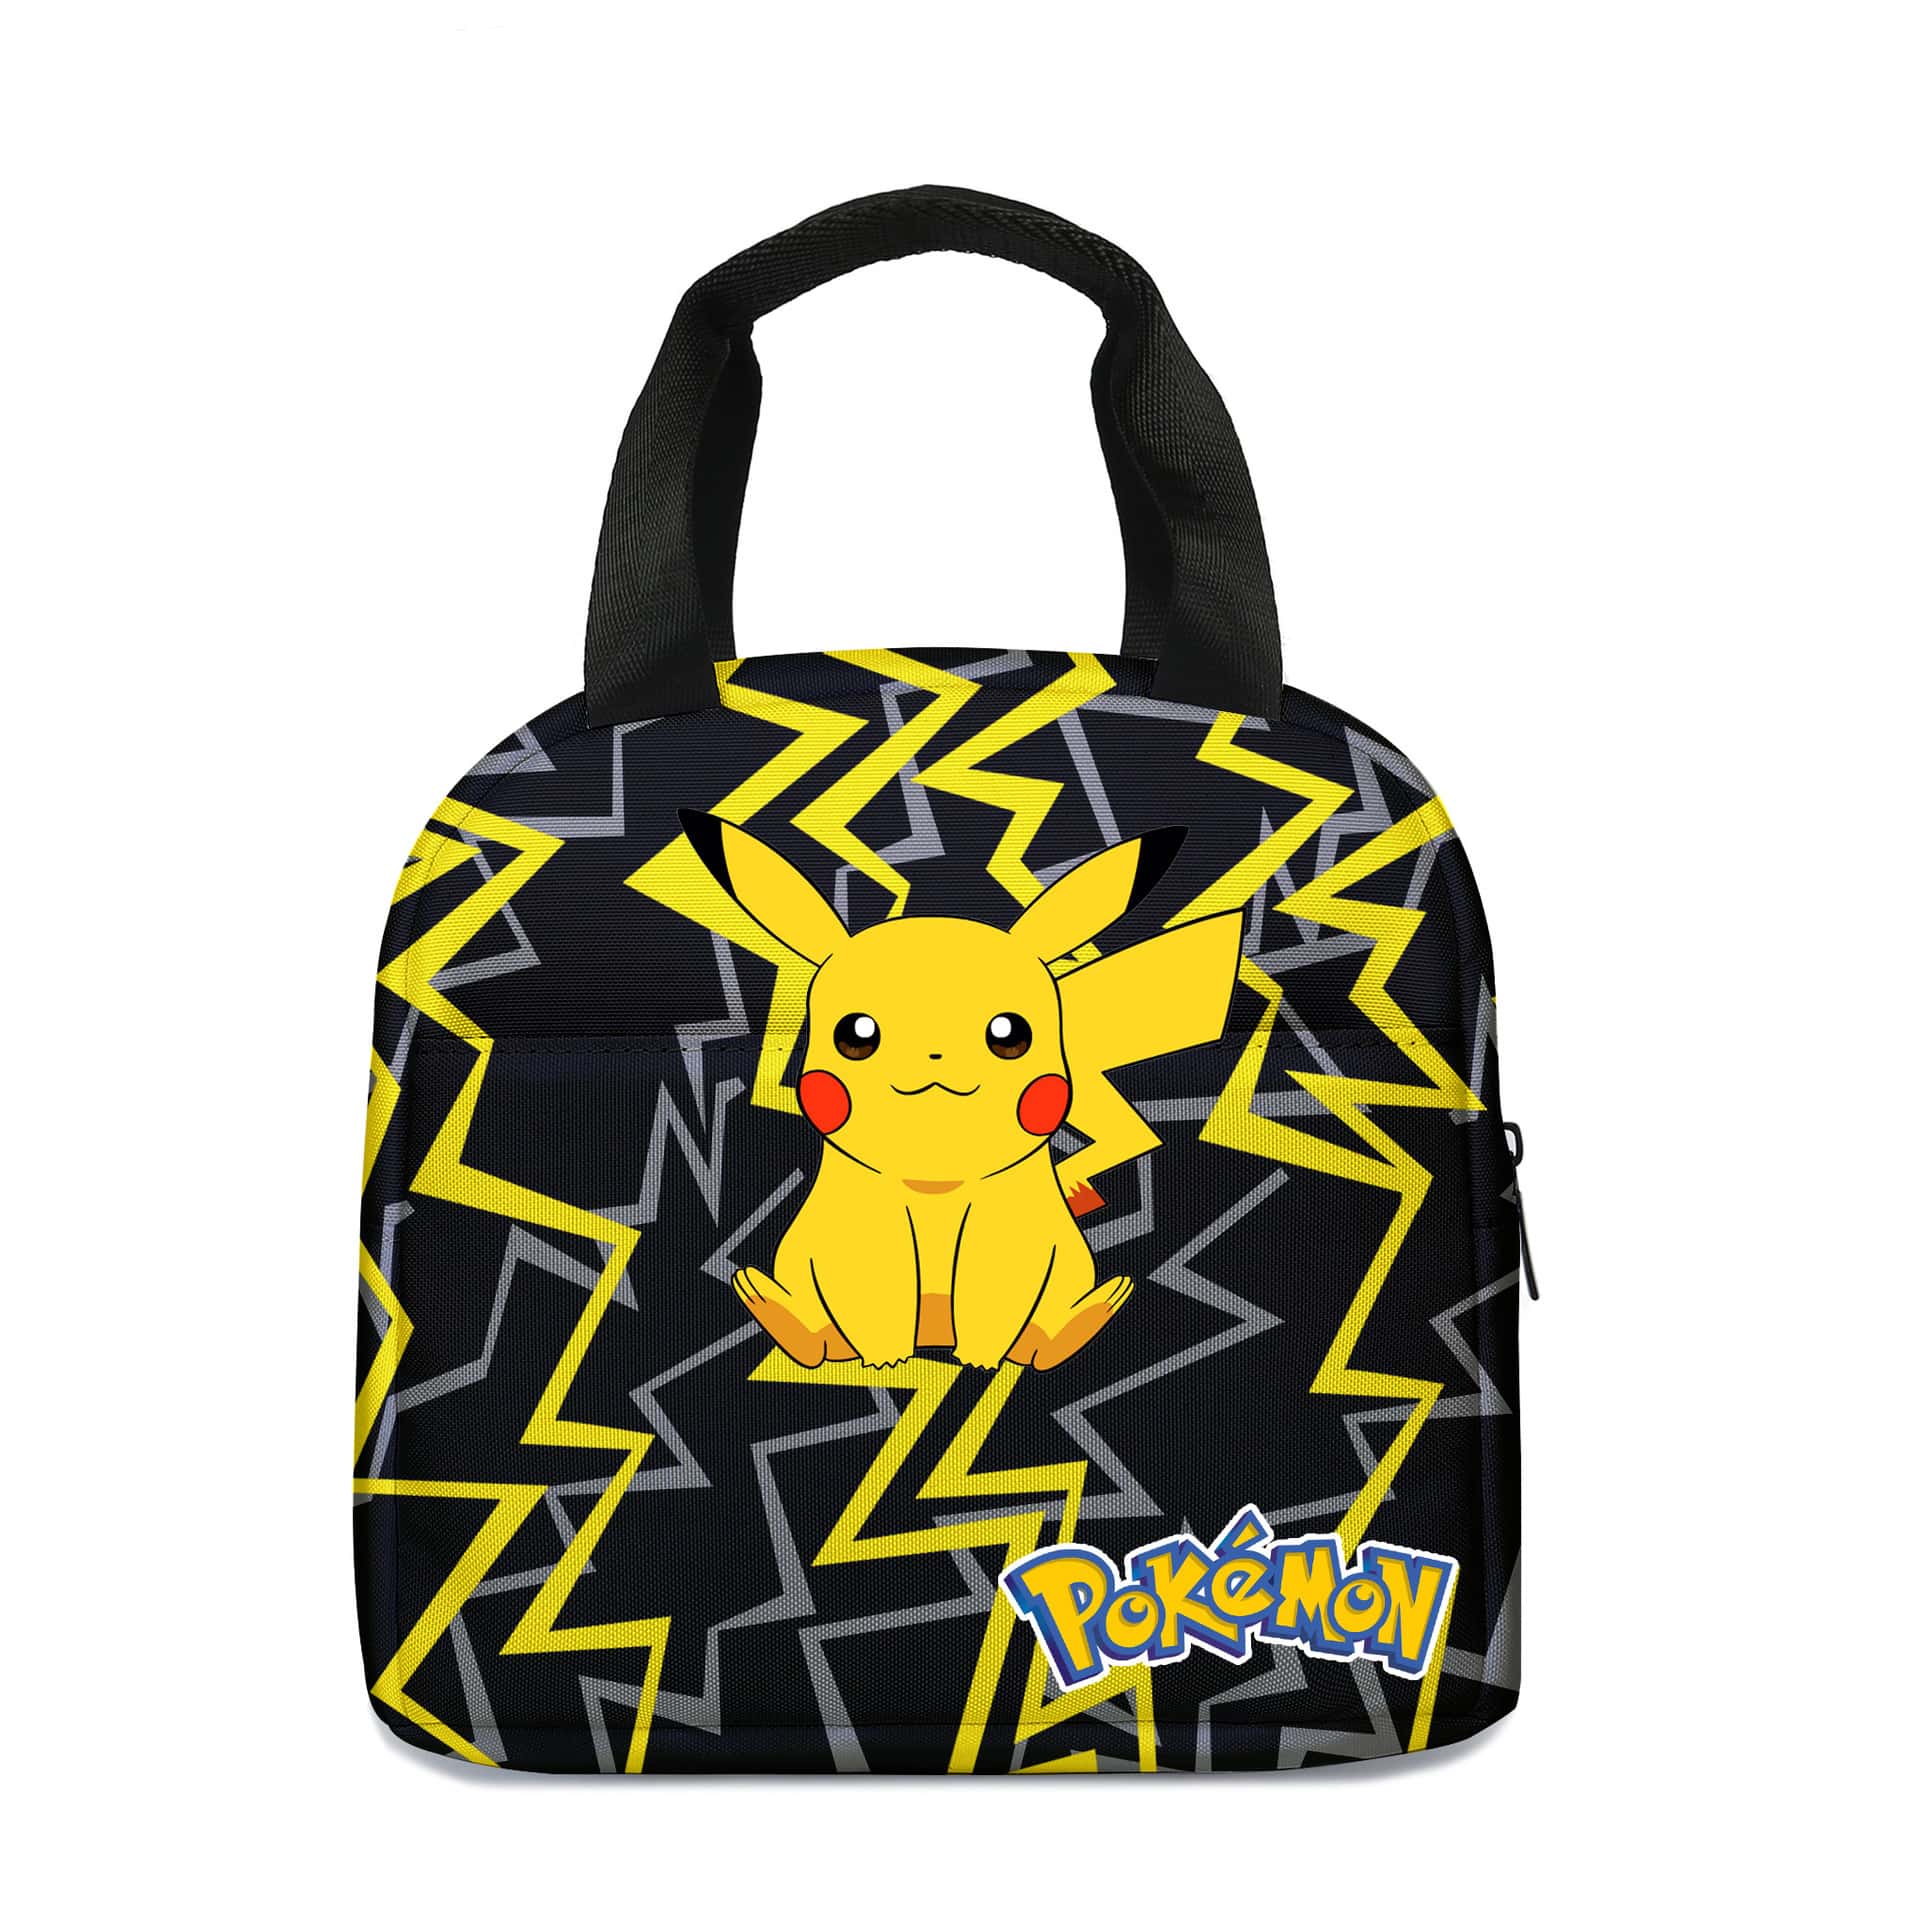 Pokémon Pikachu-ryggsäck mot vit bakgrund